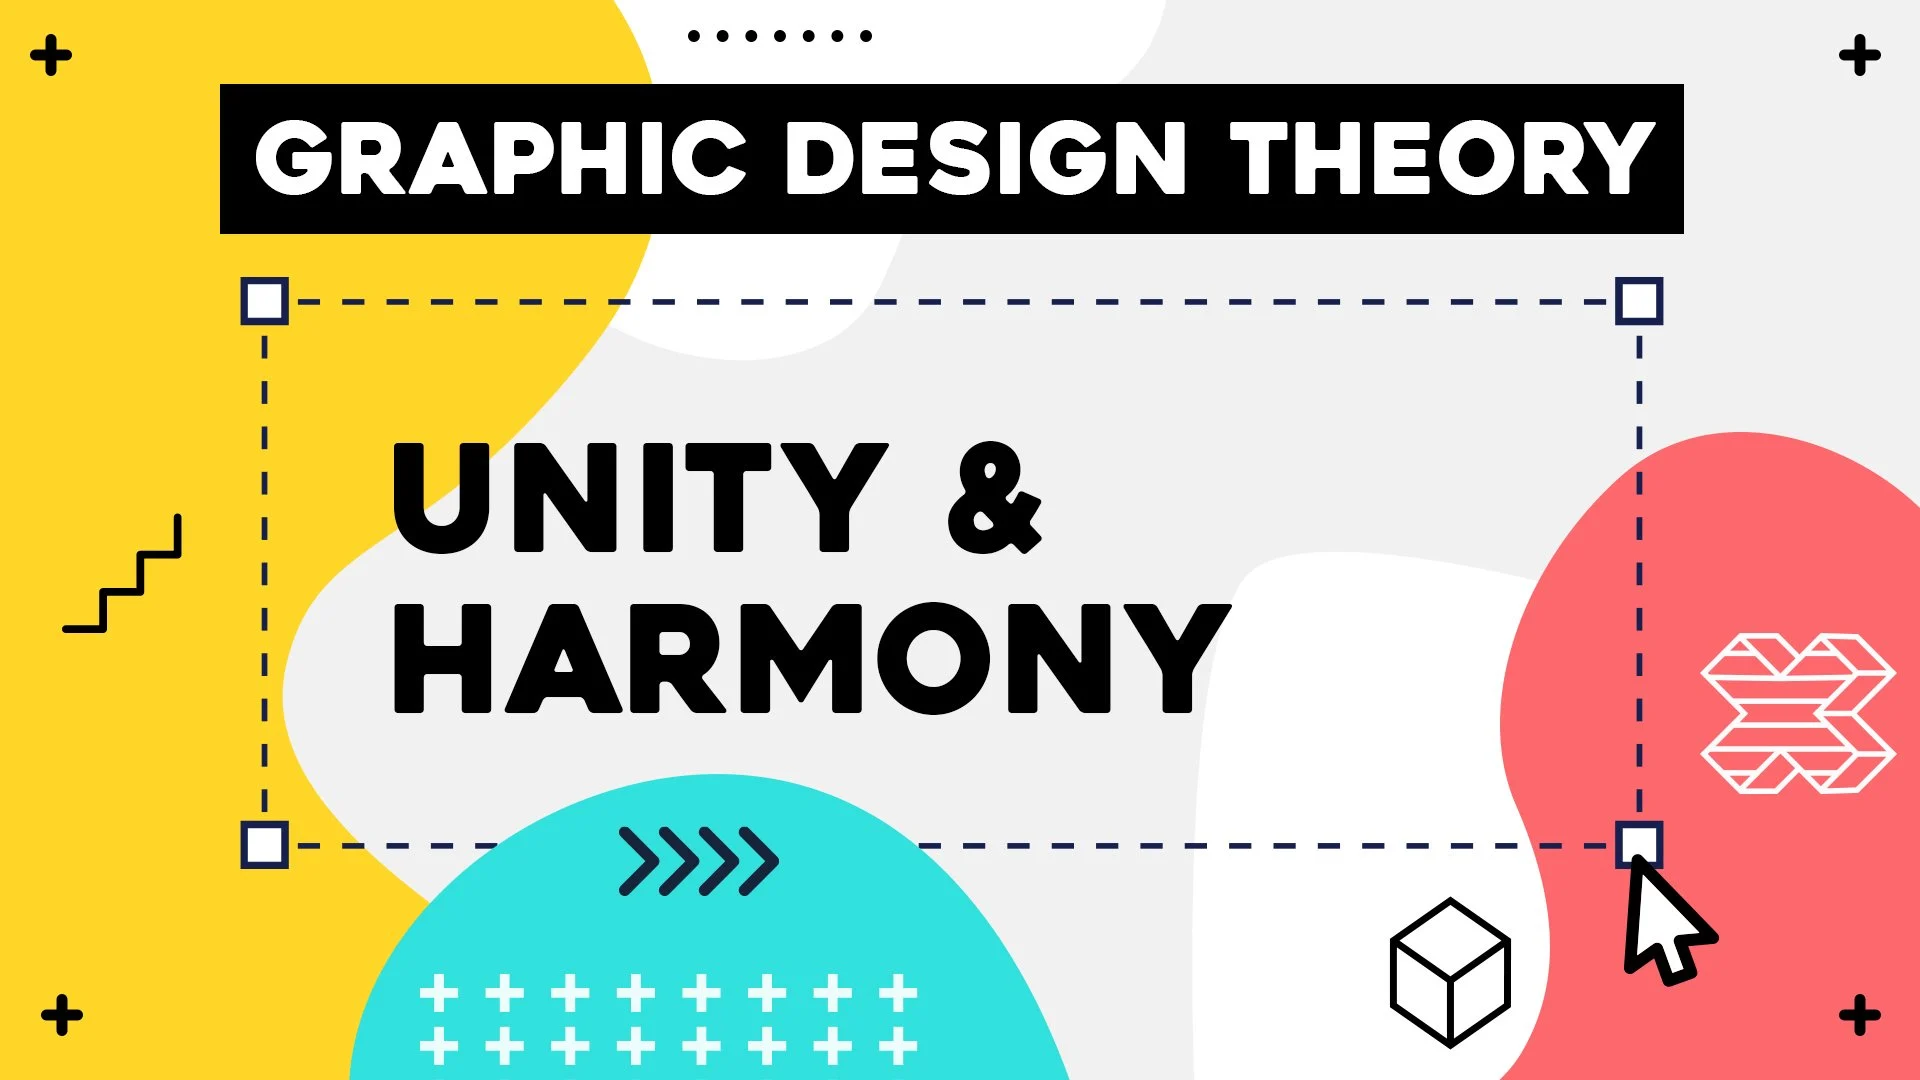 آموزش تئوری طراحی گرافیک - وحدت و هارمونی